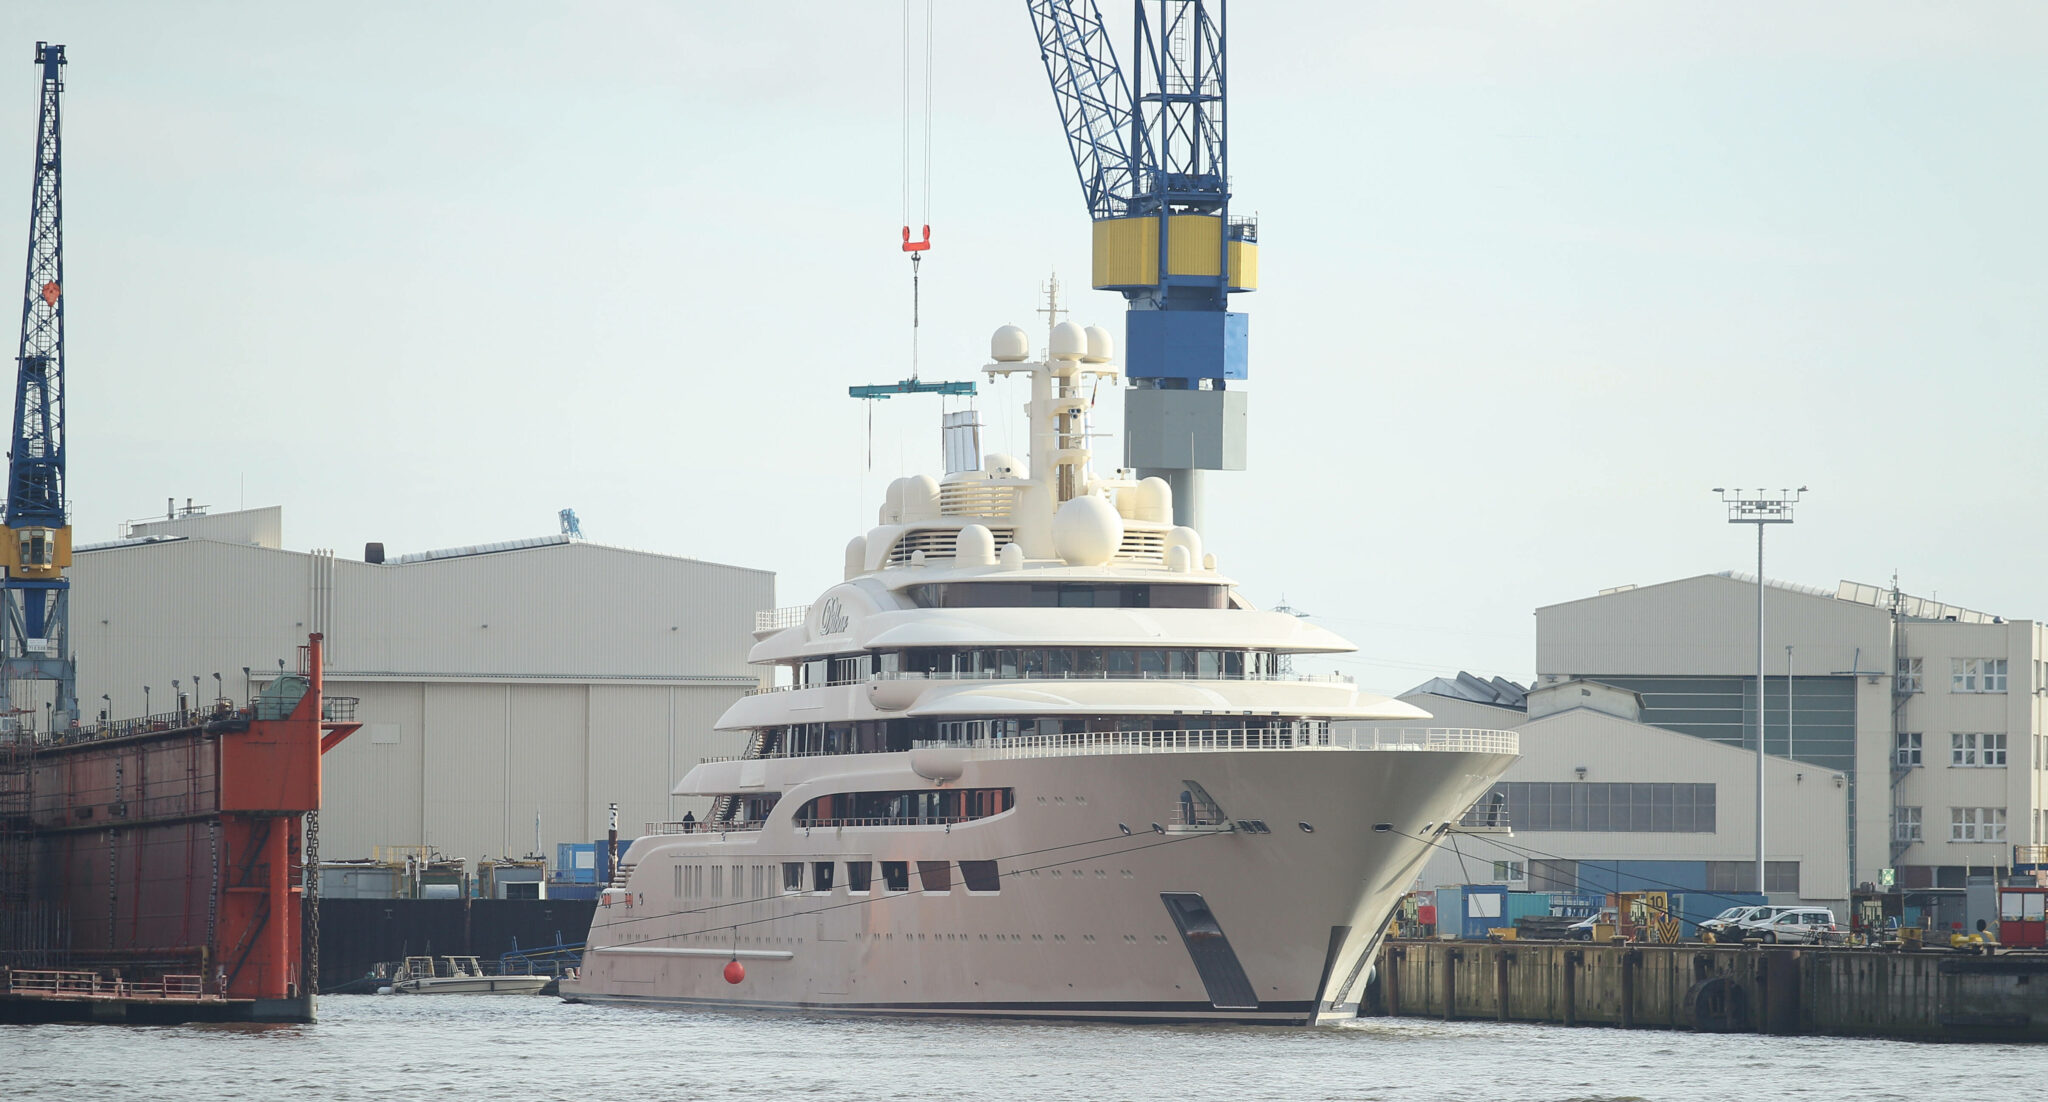 Яхта Dilbar, принадлежащая российскому миллиардеру Алишеру Усманову, находится в порту верфи BlohmÖÖVoss. Гамбург. Ноябрь 2021 года. Фото Hanno Bode/imago images/Scanpix/LETA